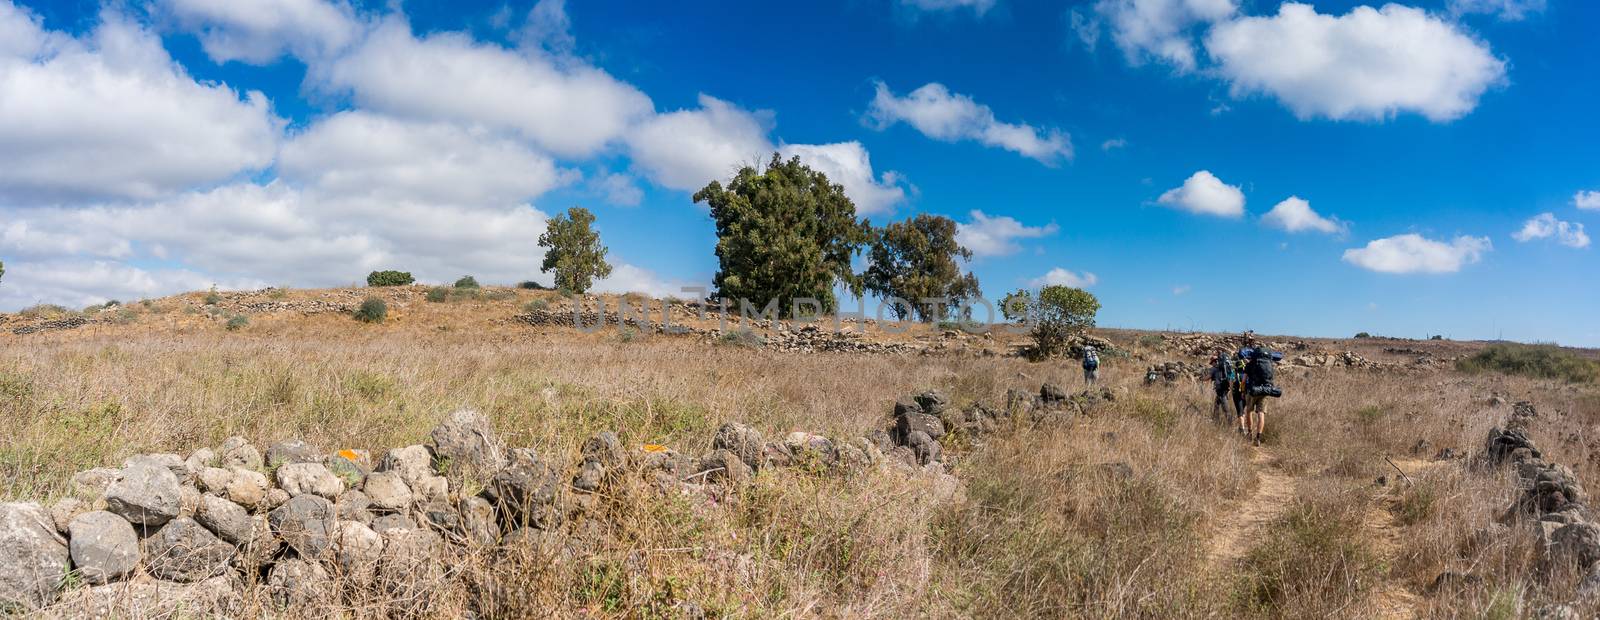 Hiking in Golan heights of Israel by javax